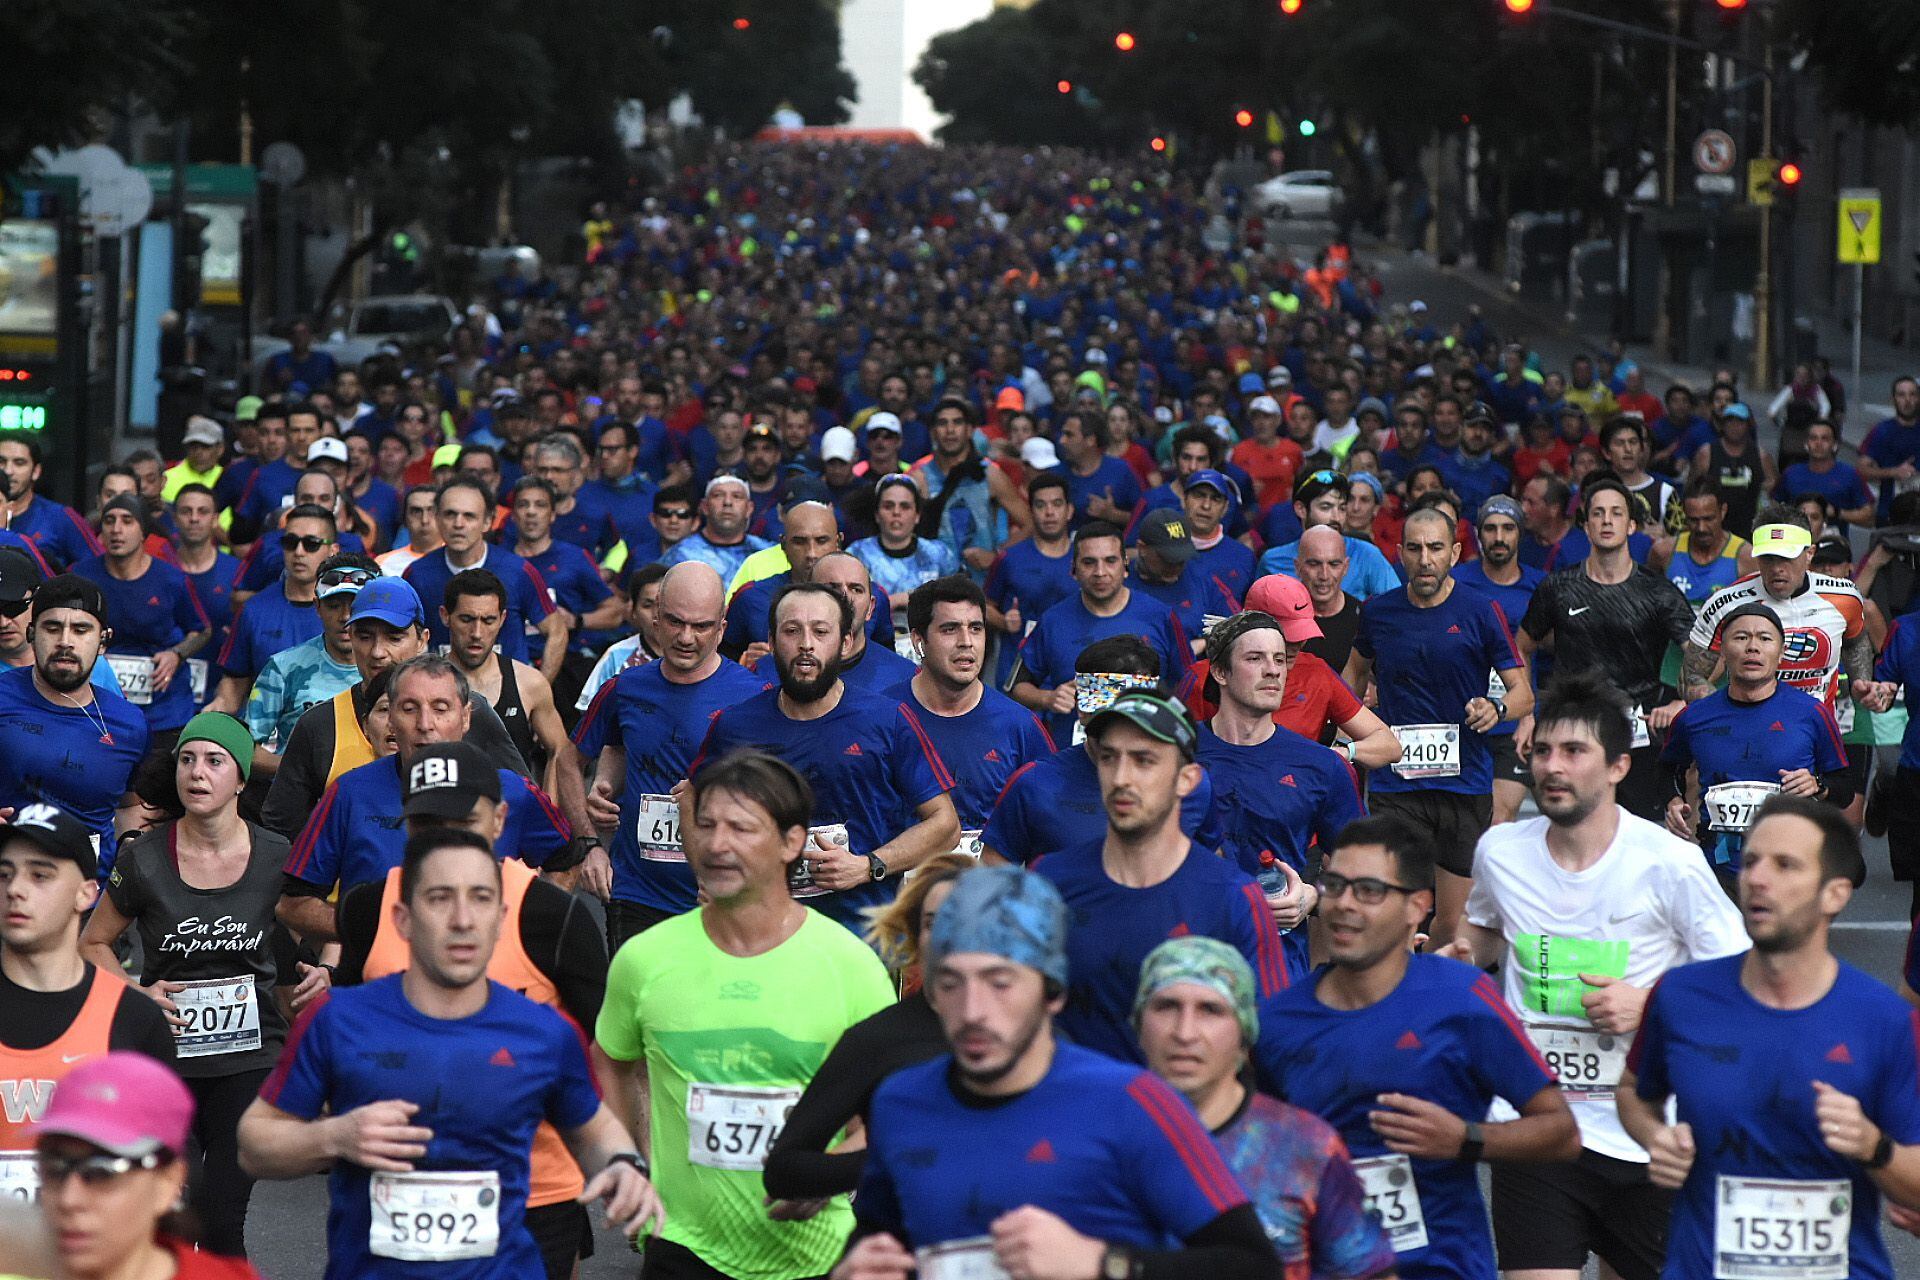 Los 21km se convirtieron en la carrera más convocante de la Ciudad, se estima que participarán 20.000 corredores (Nicolás Stulberg)